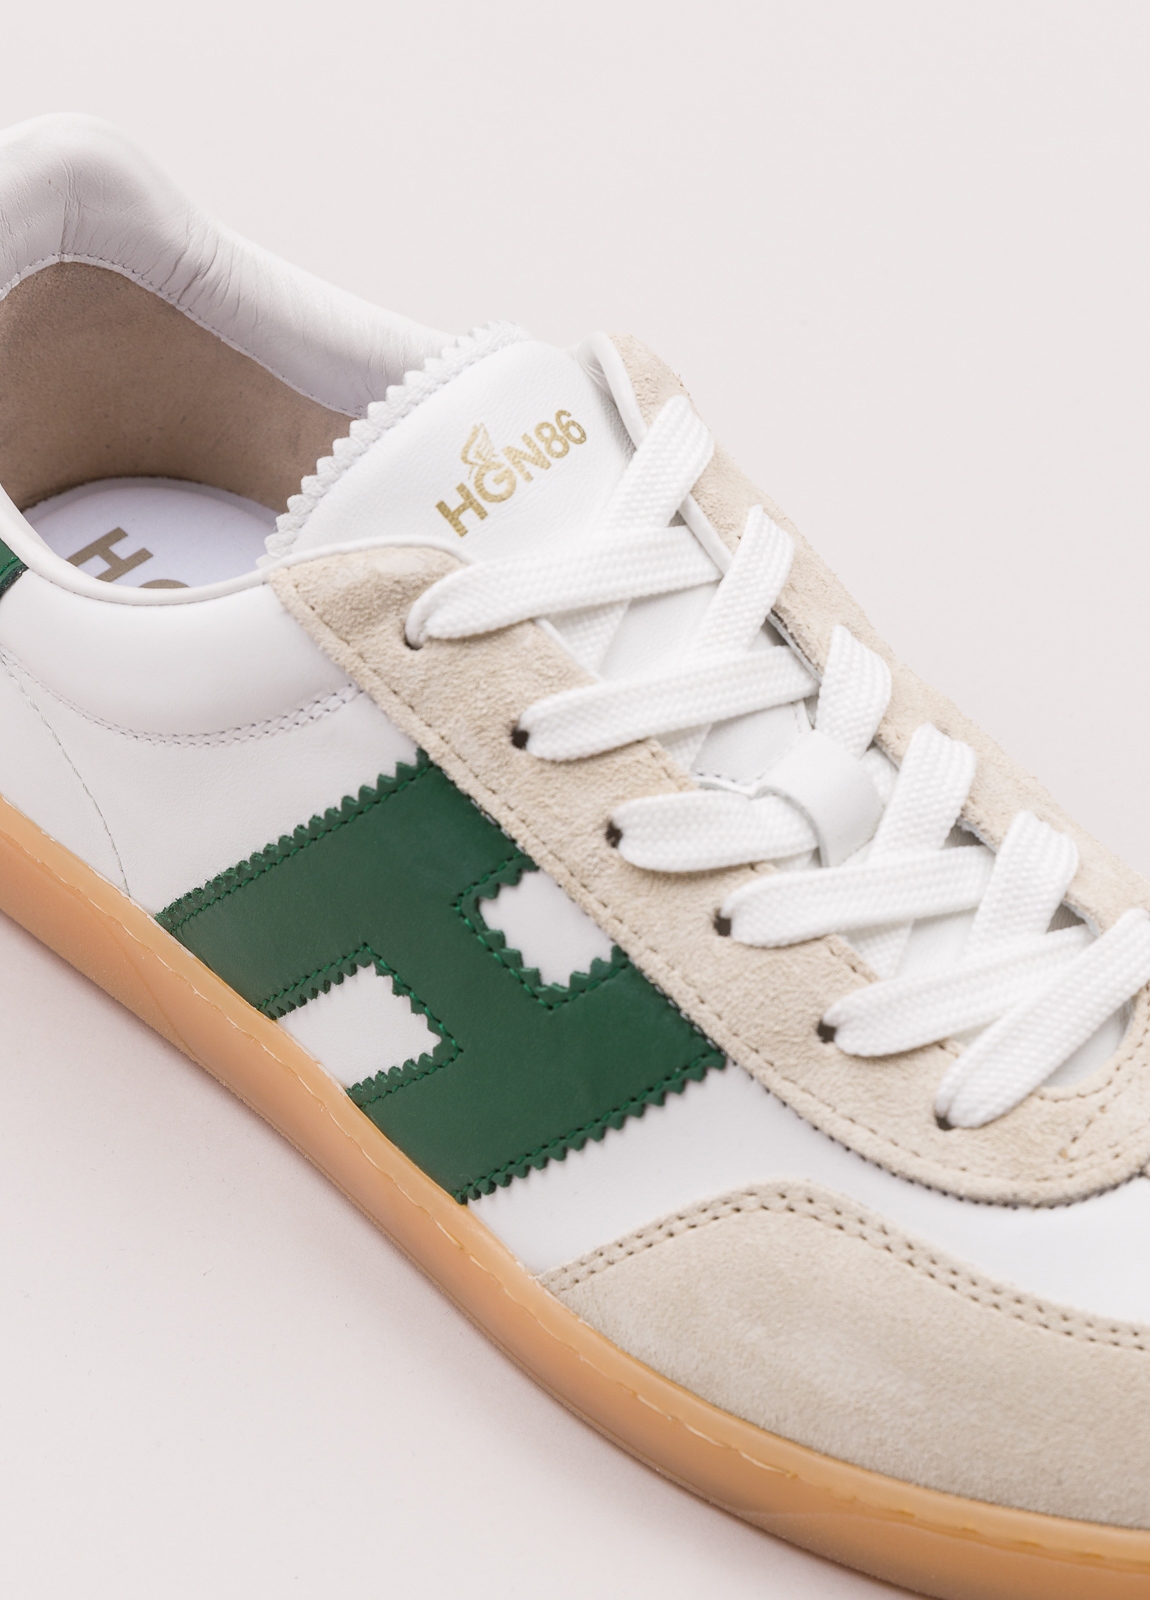 Zapatillas deportivas HOGAN color blanco, beige y verde - Ítem4